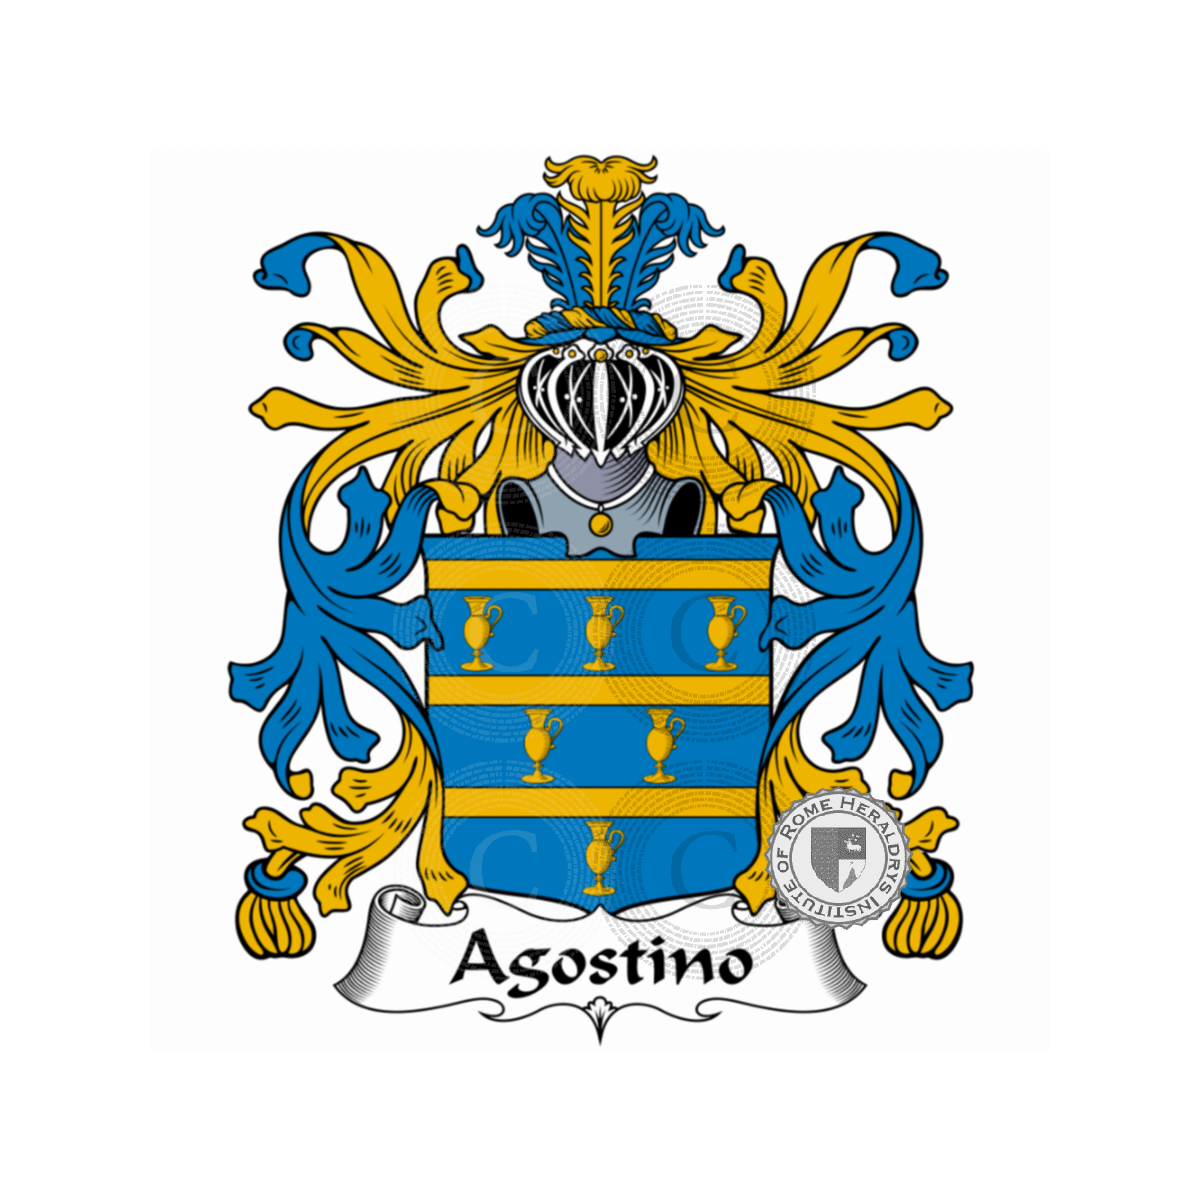 Brasão da famíliaAgostino, d'Agostino